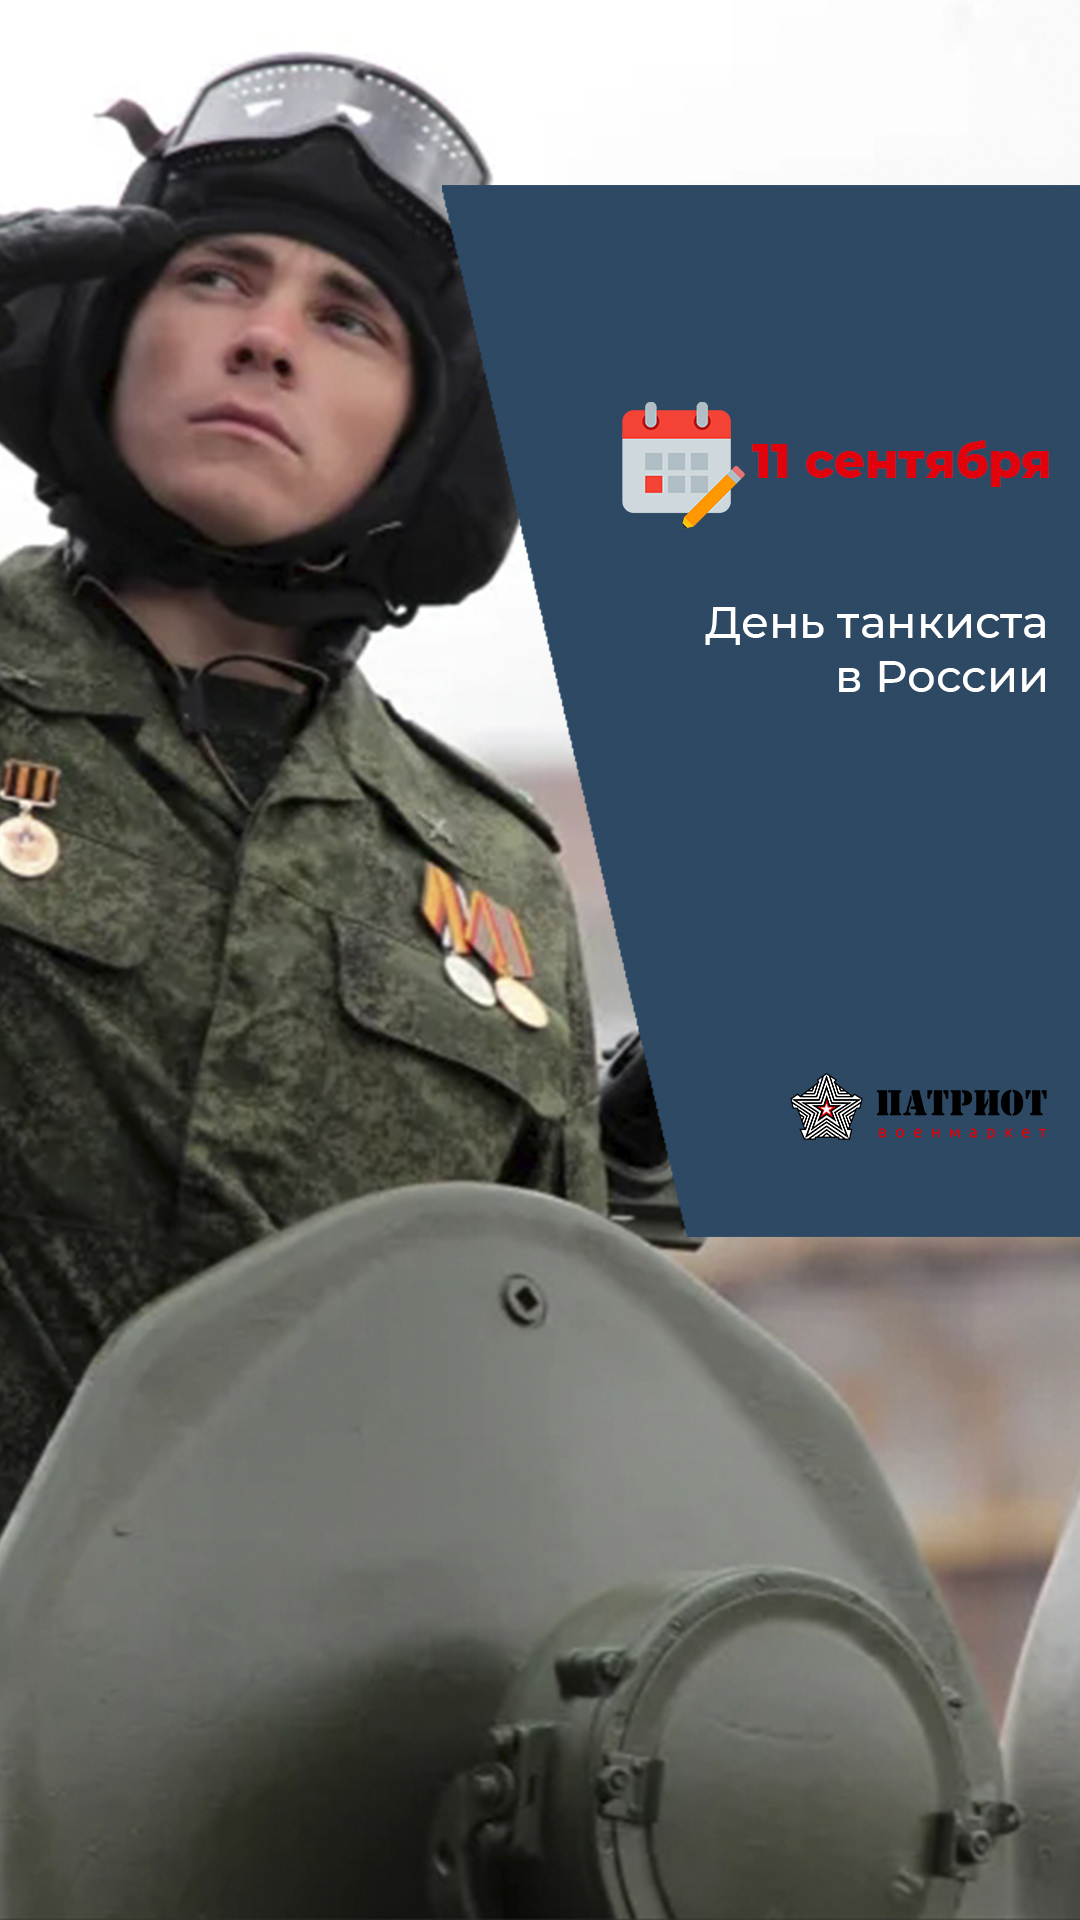 11 Сентября - День танкиста в России